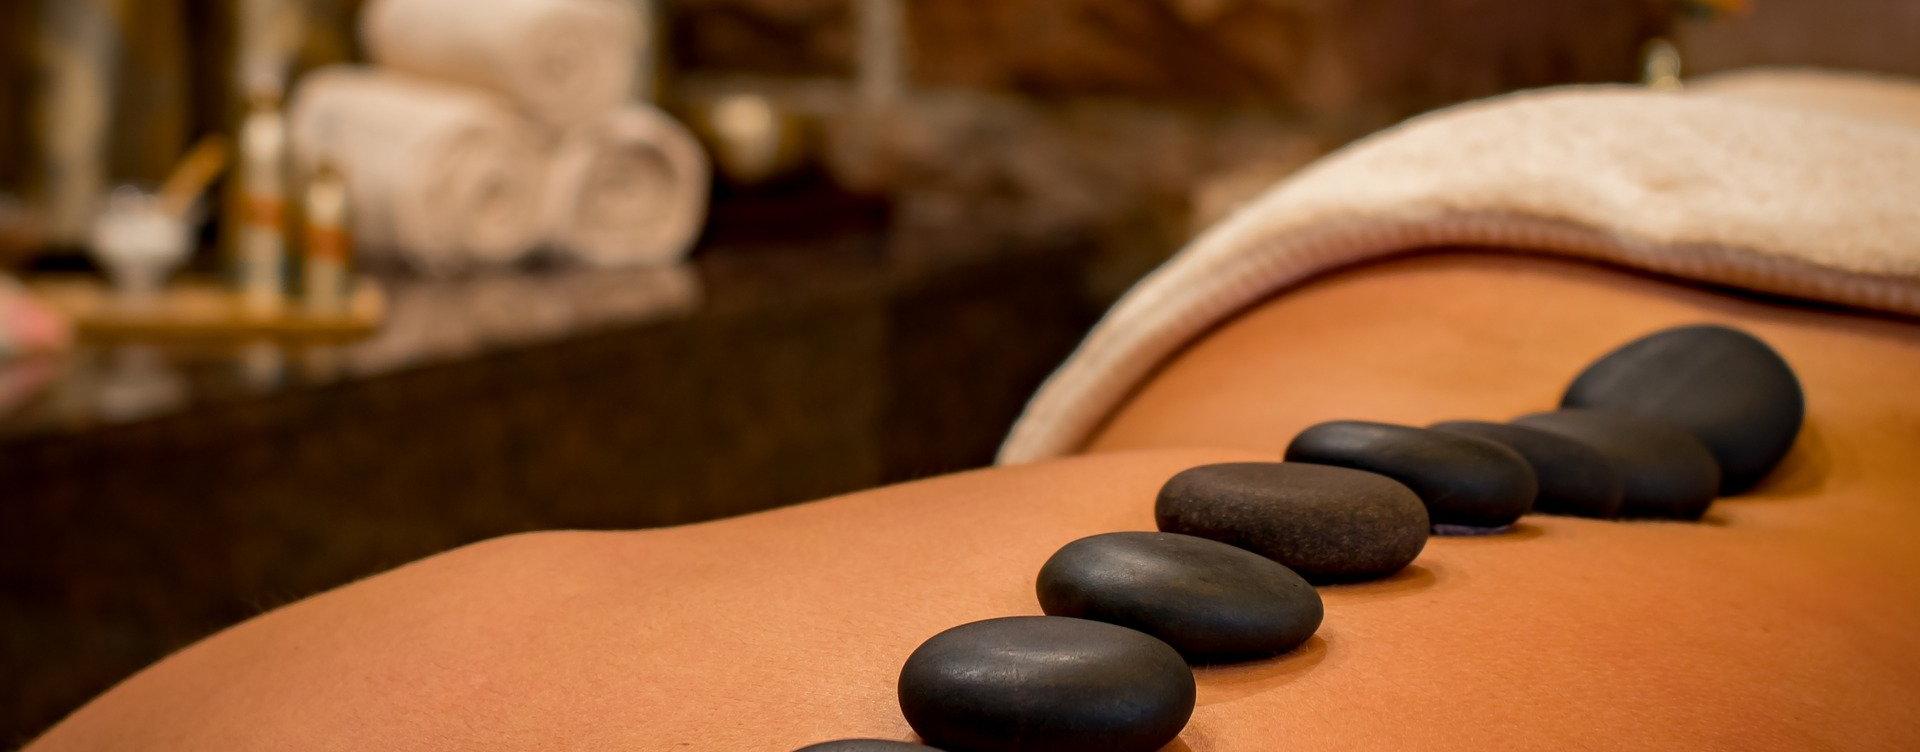 piedras de masaje sobre una espalda